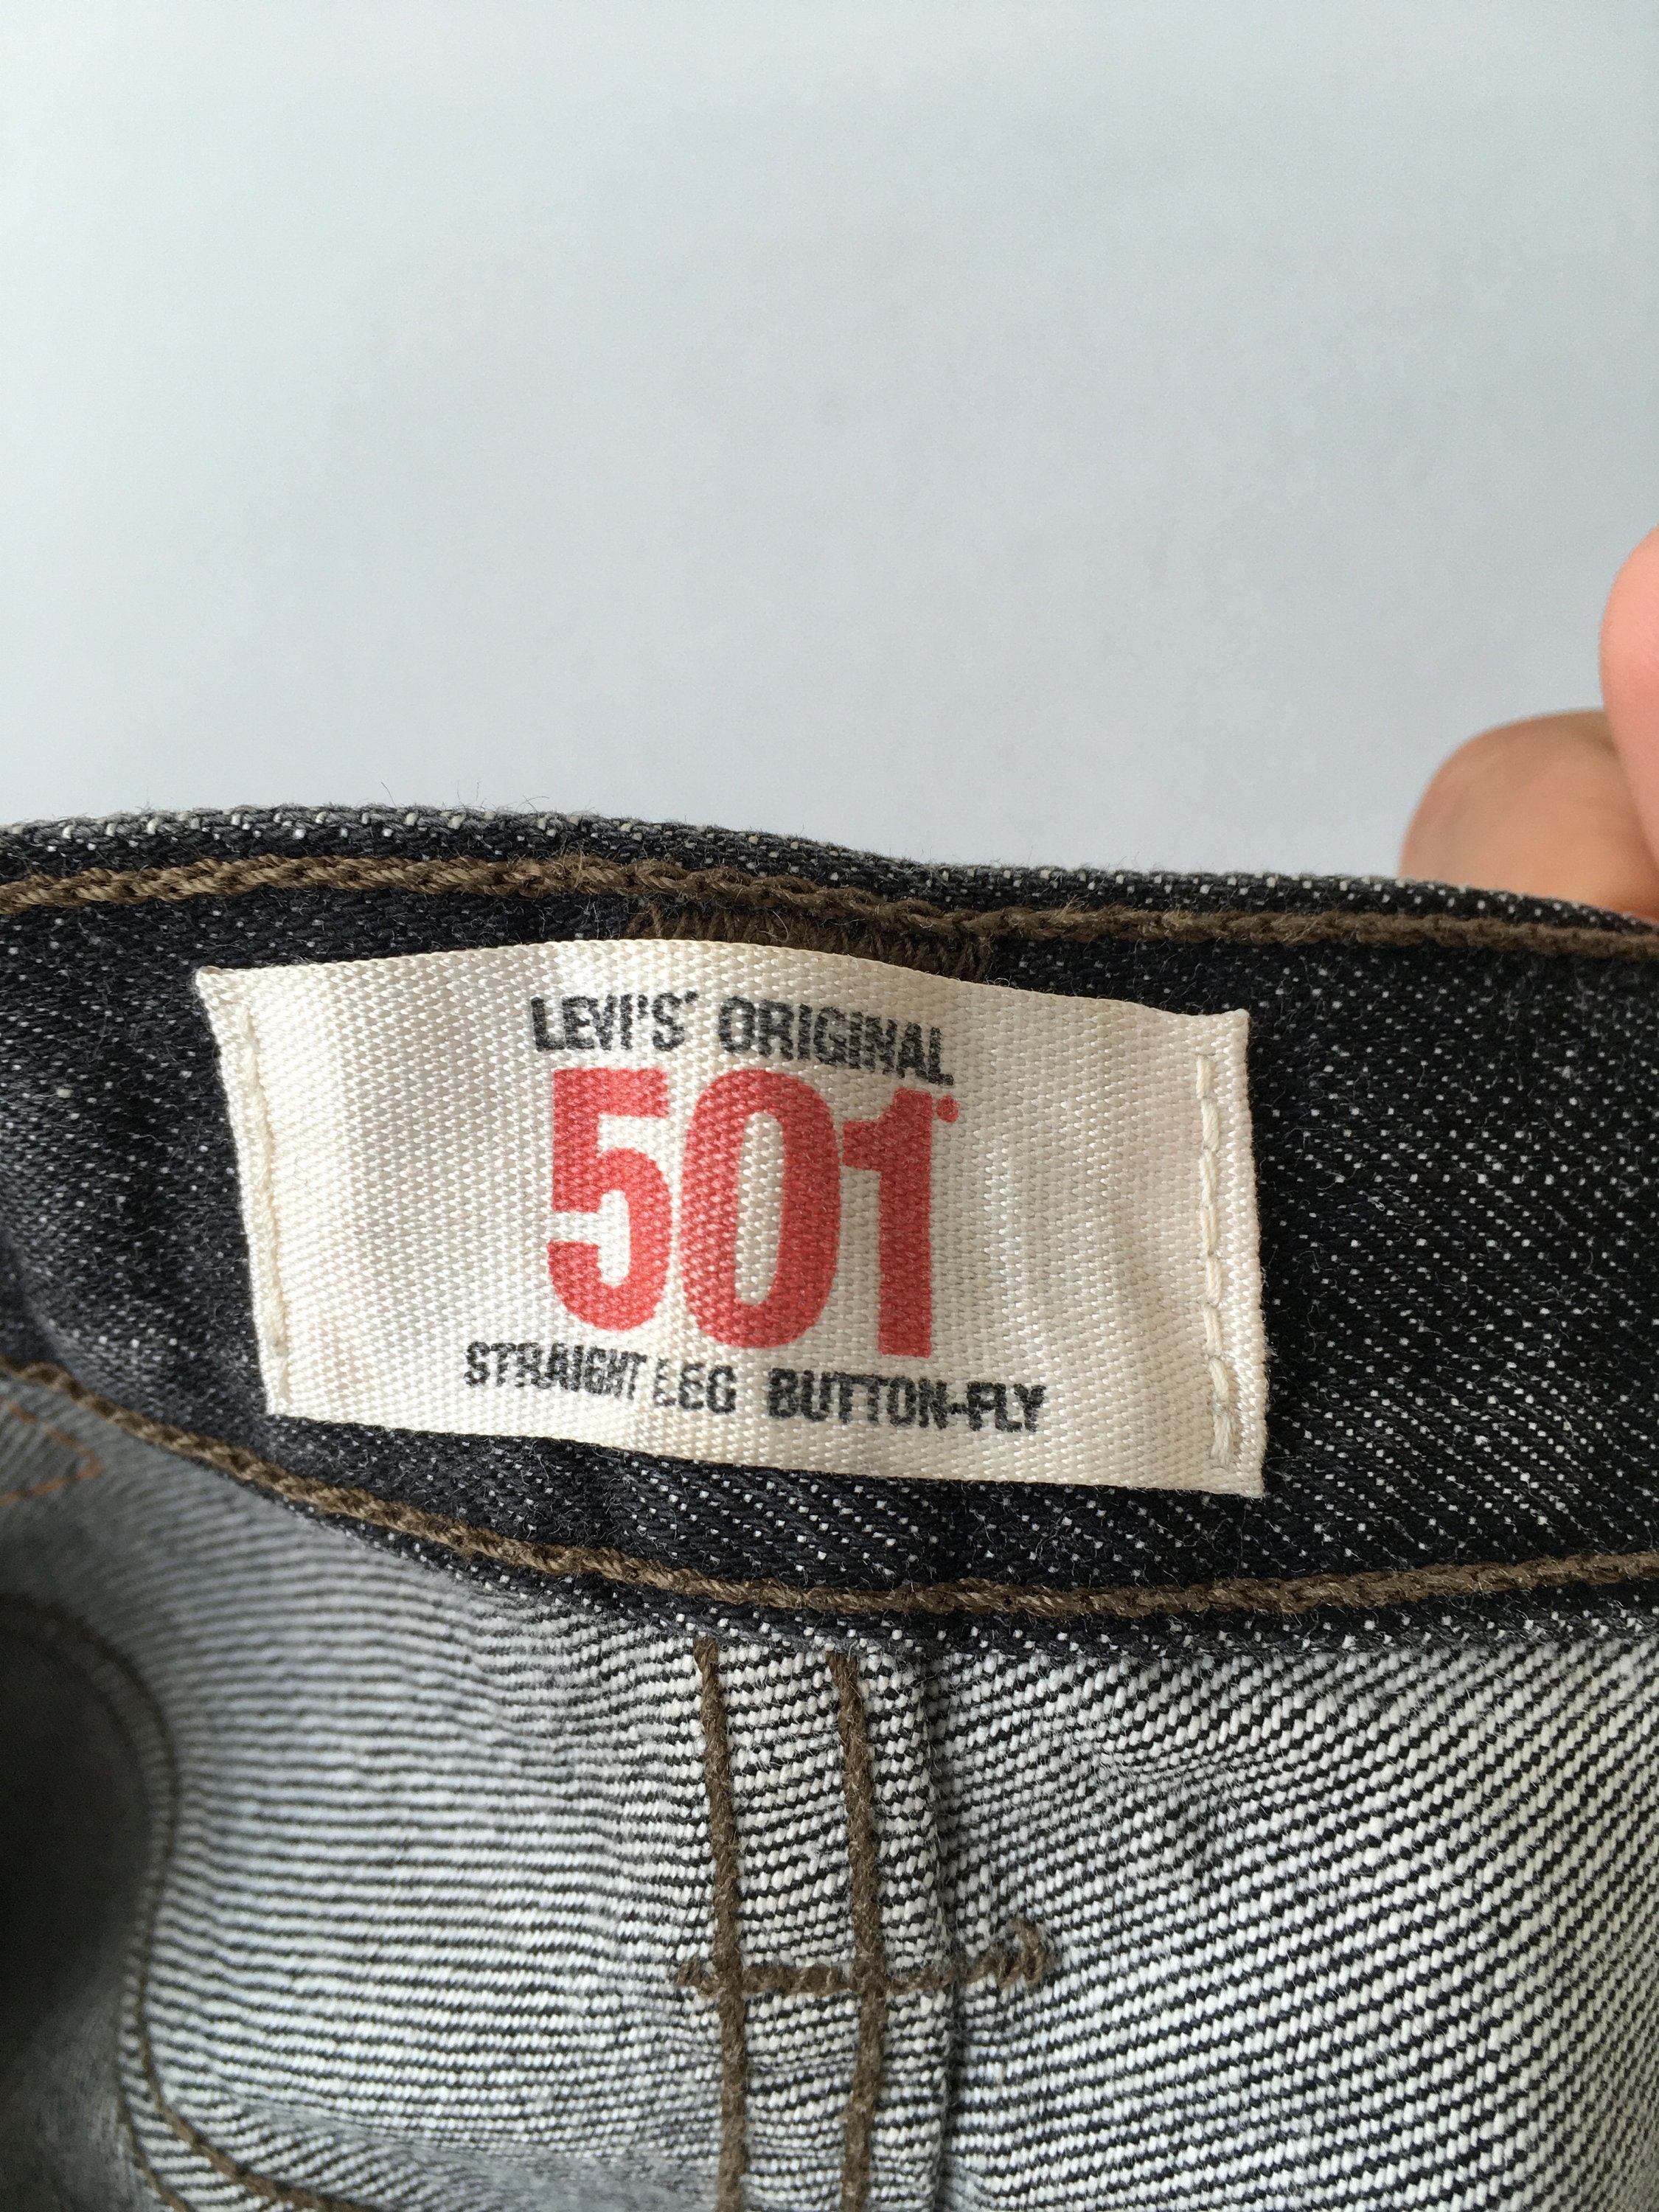 Size 27x29 Vintage Levis 501 Women's Black Jeans Levis | Etsy